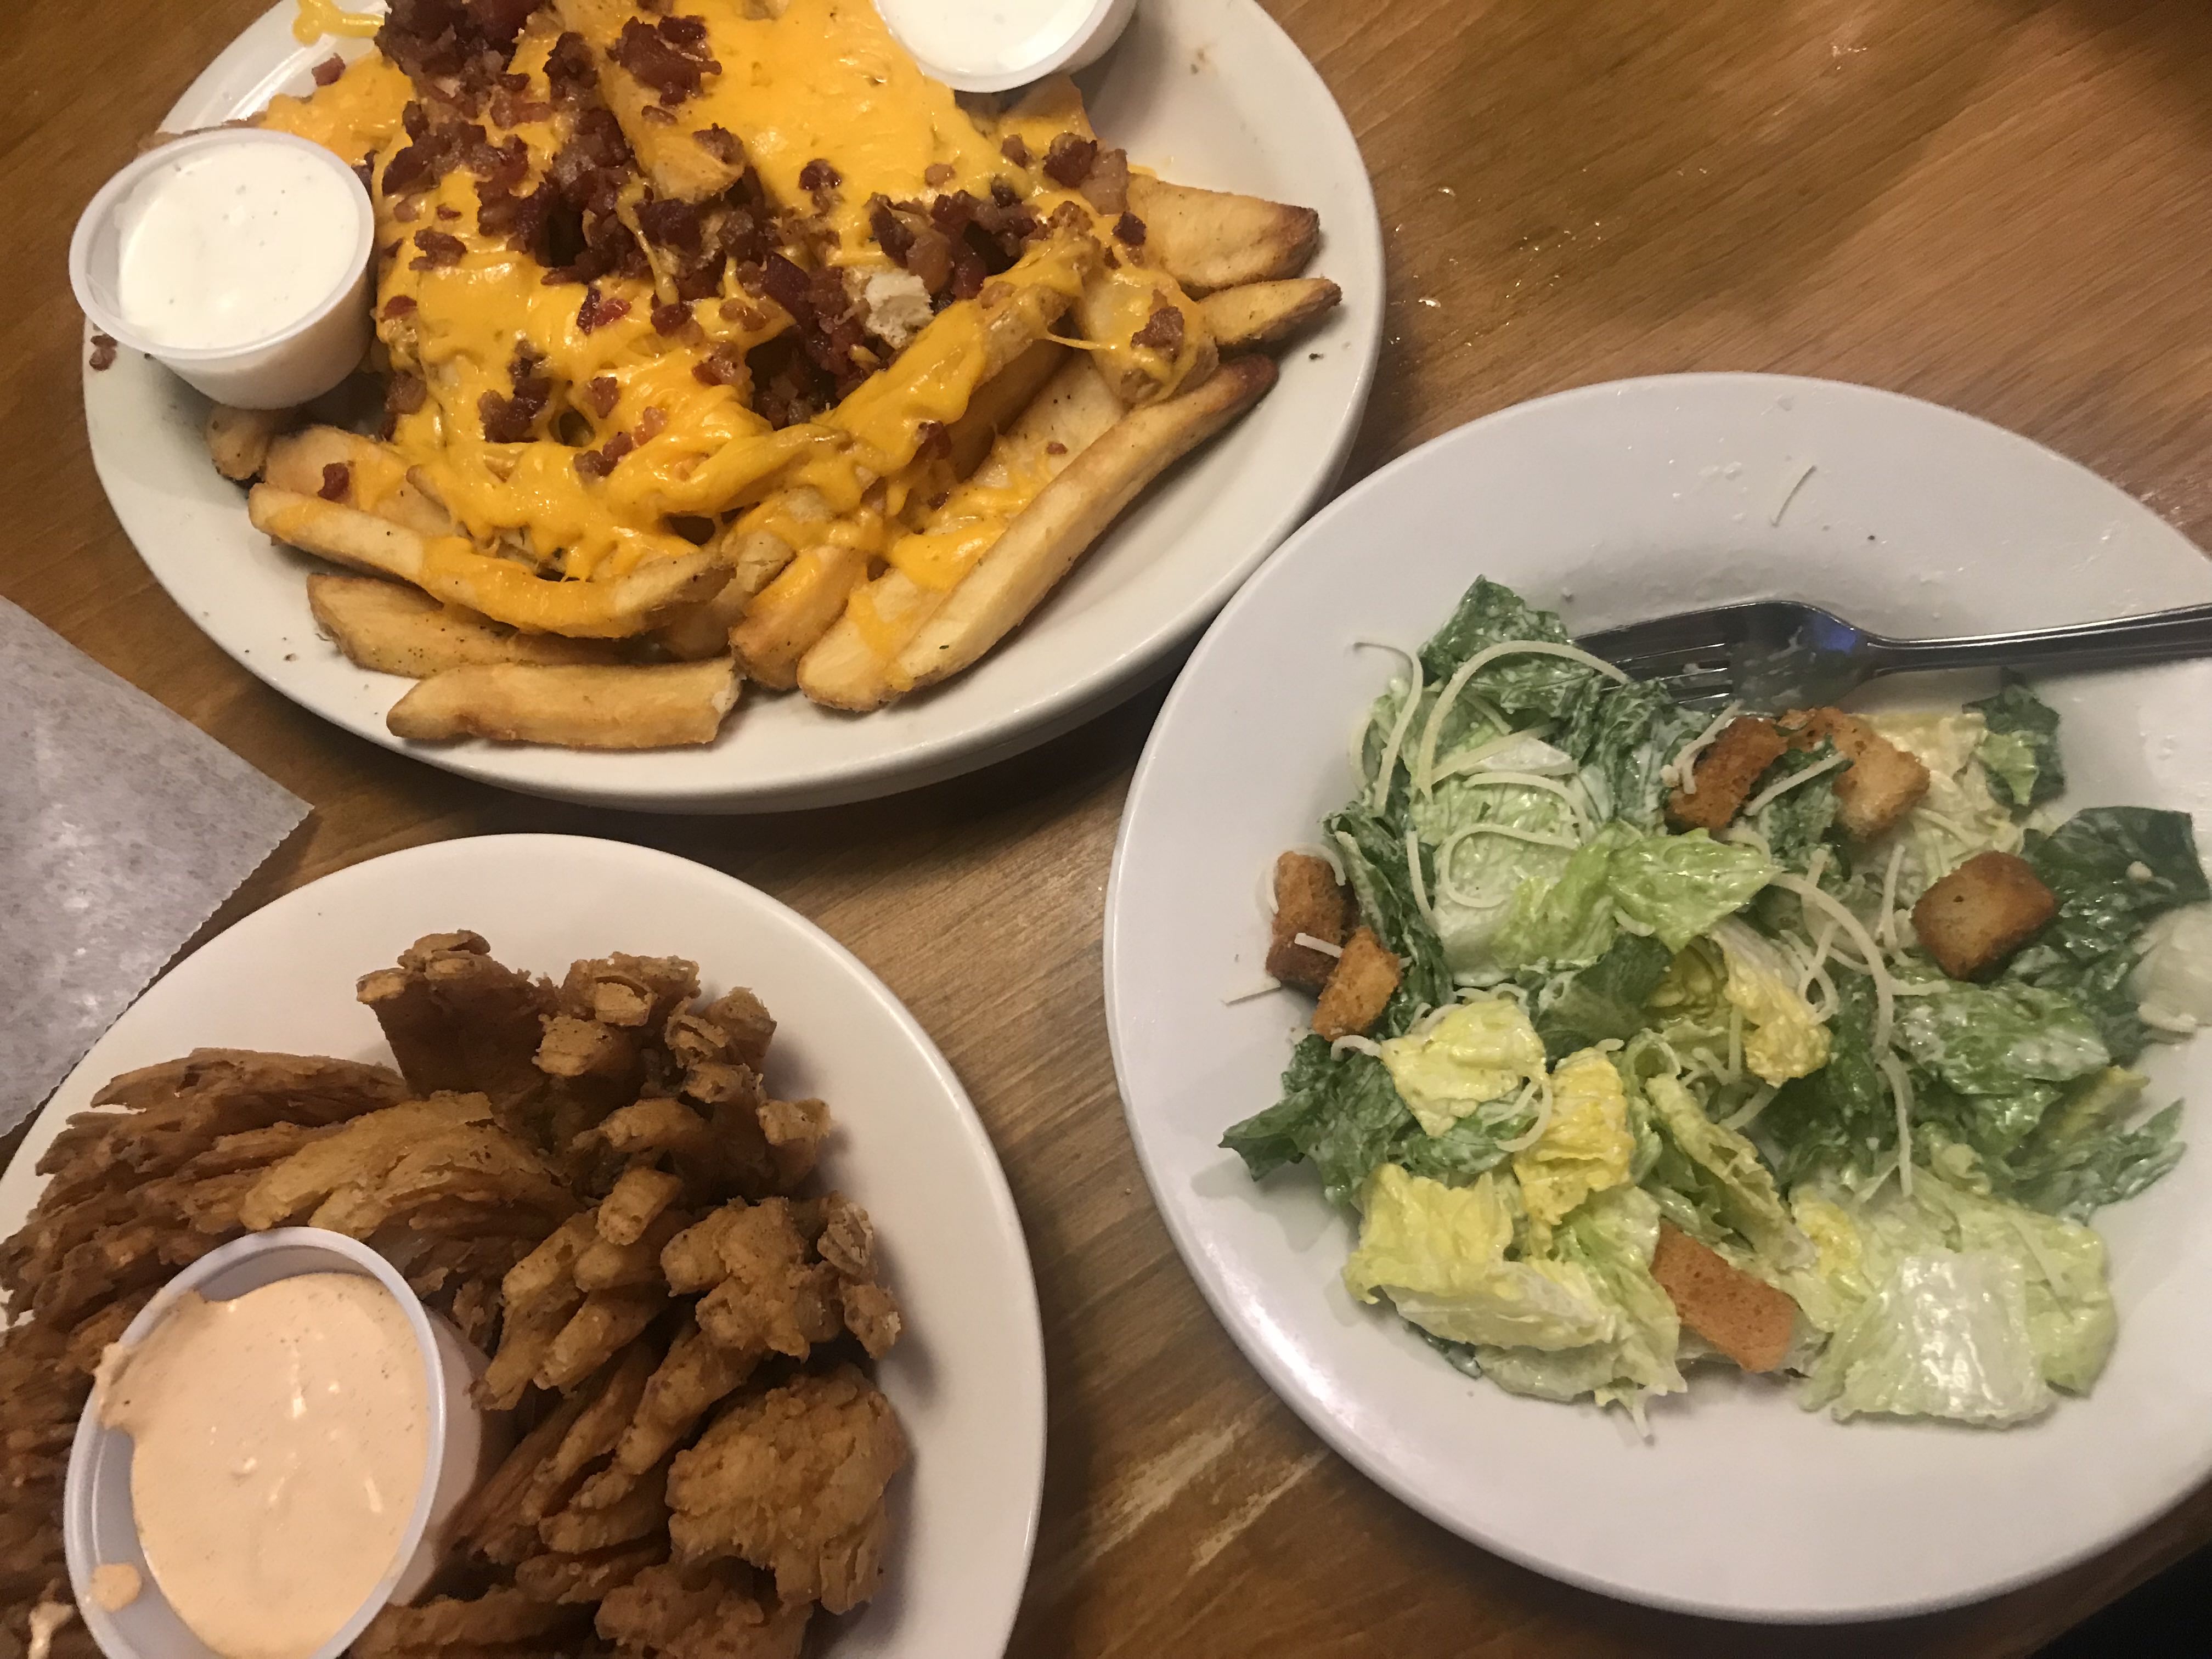 Texas Roadhouse Restaurant Review - Devour Dinner